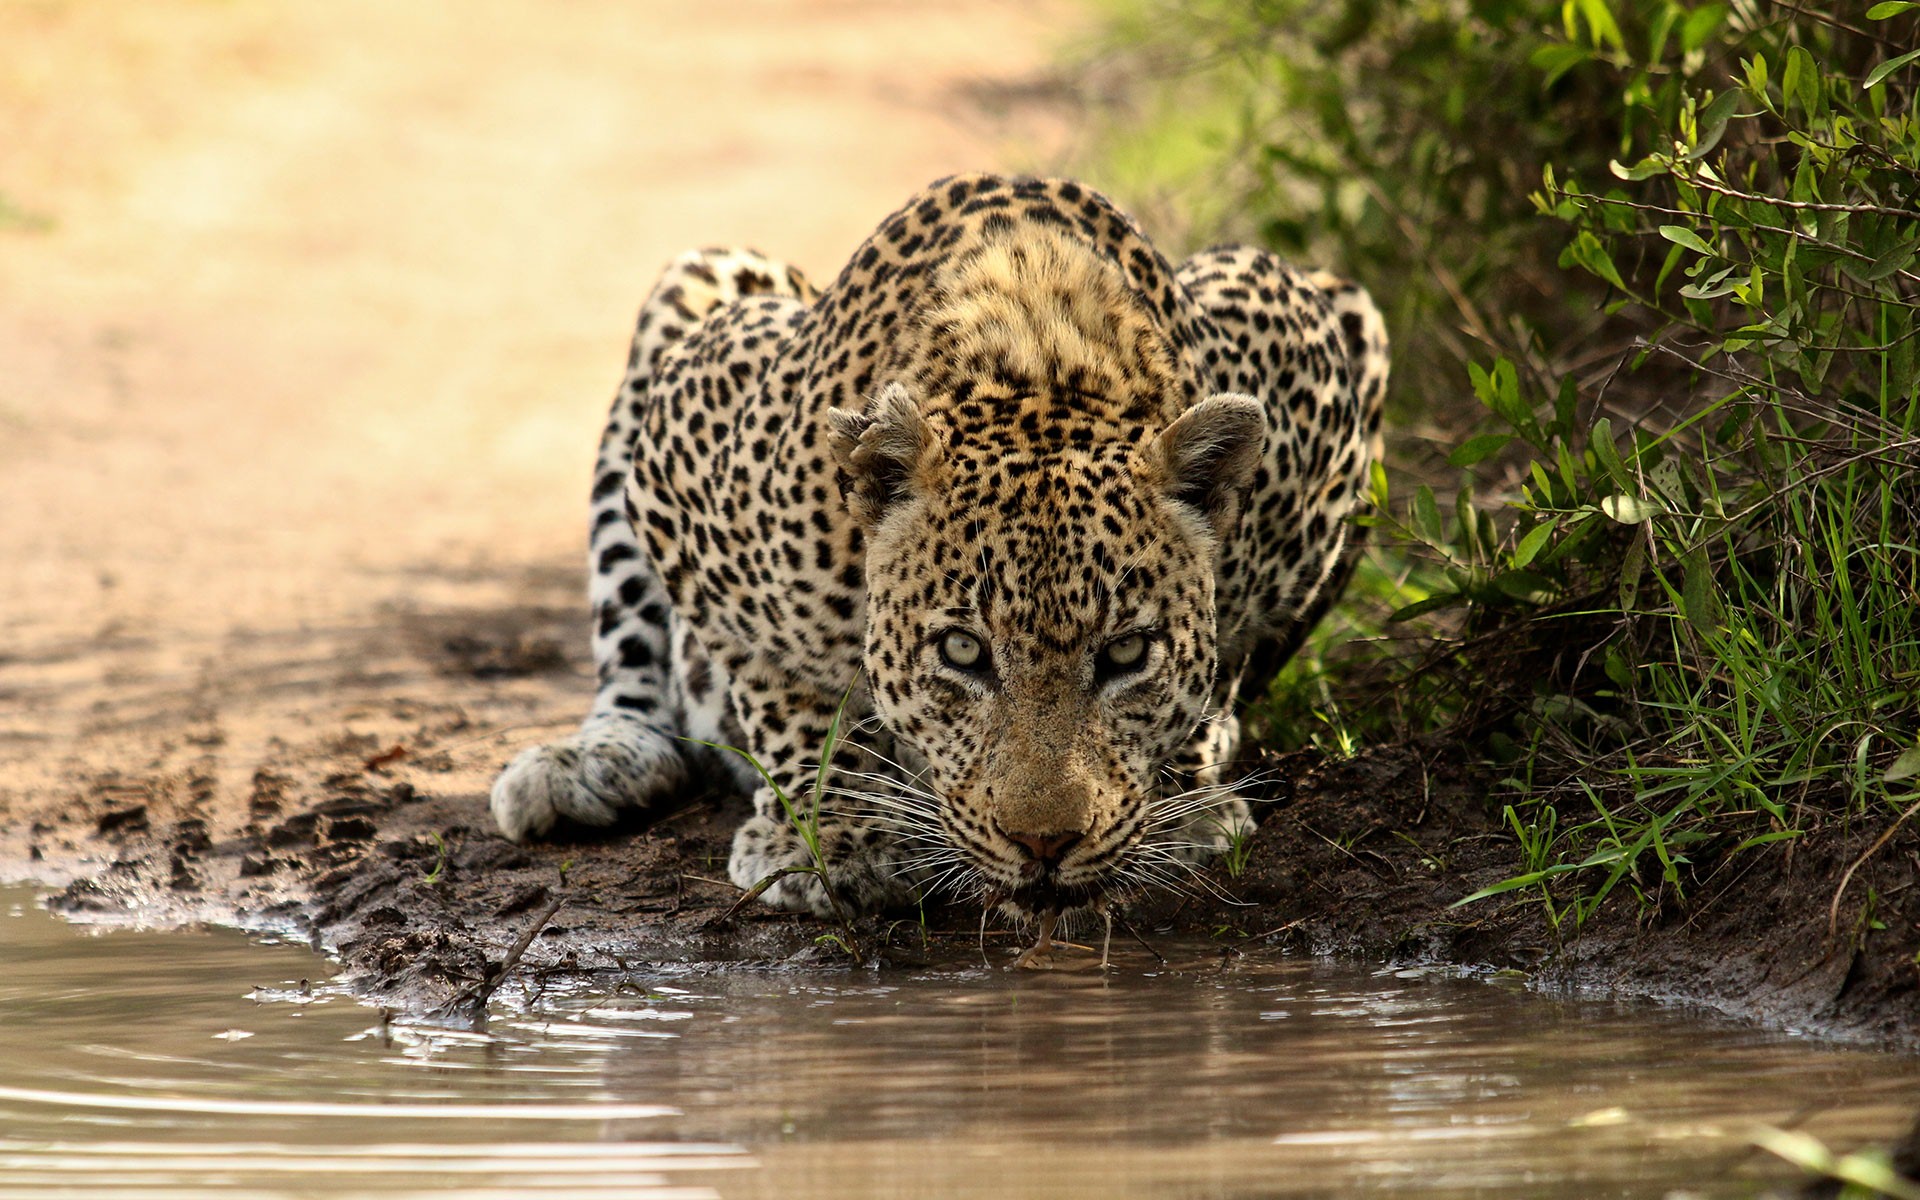 Leopard Drink Water In Kruger National Park South Africa - Kruger National Park Leopard - HD Wallpaper 